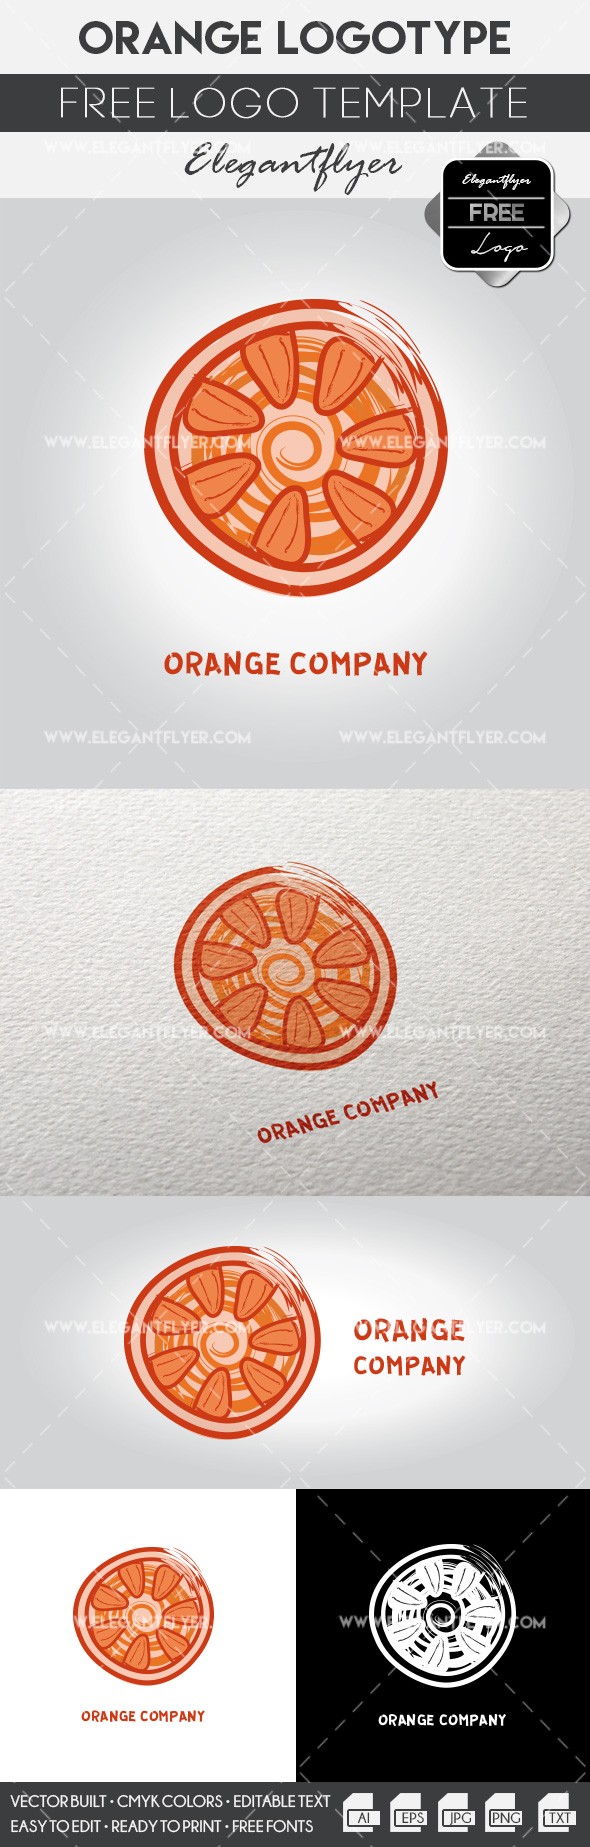 Orange company by ElegantFlyer